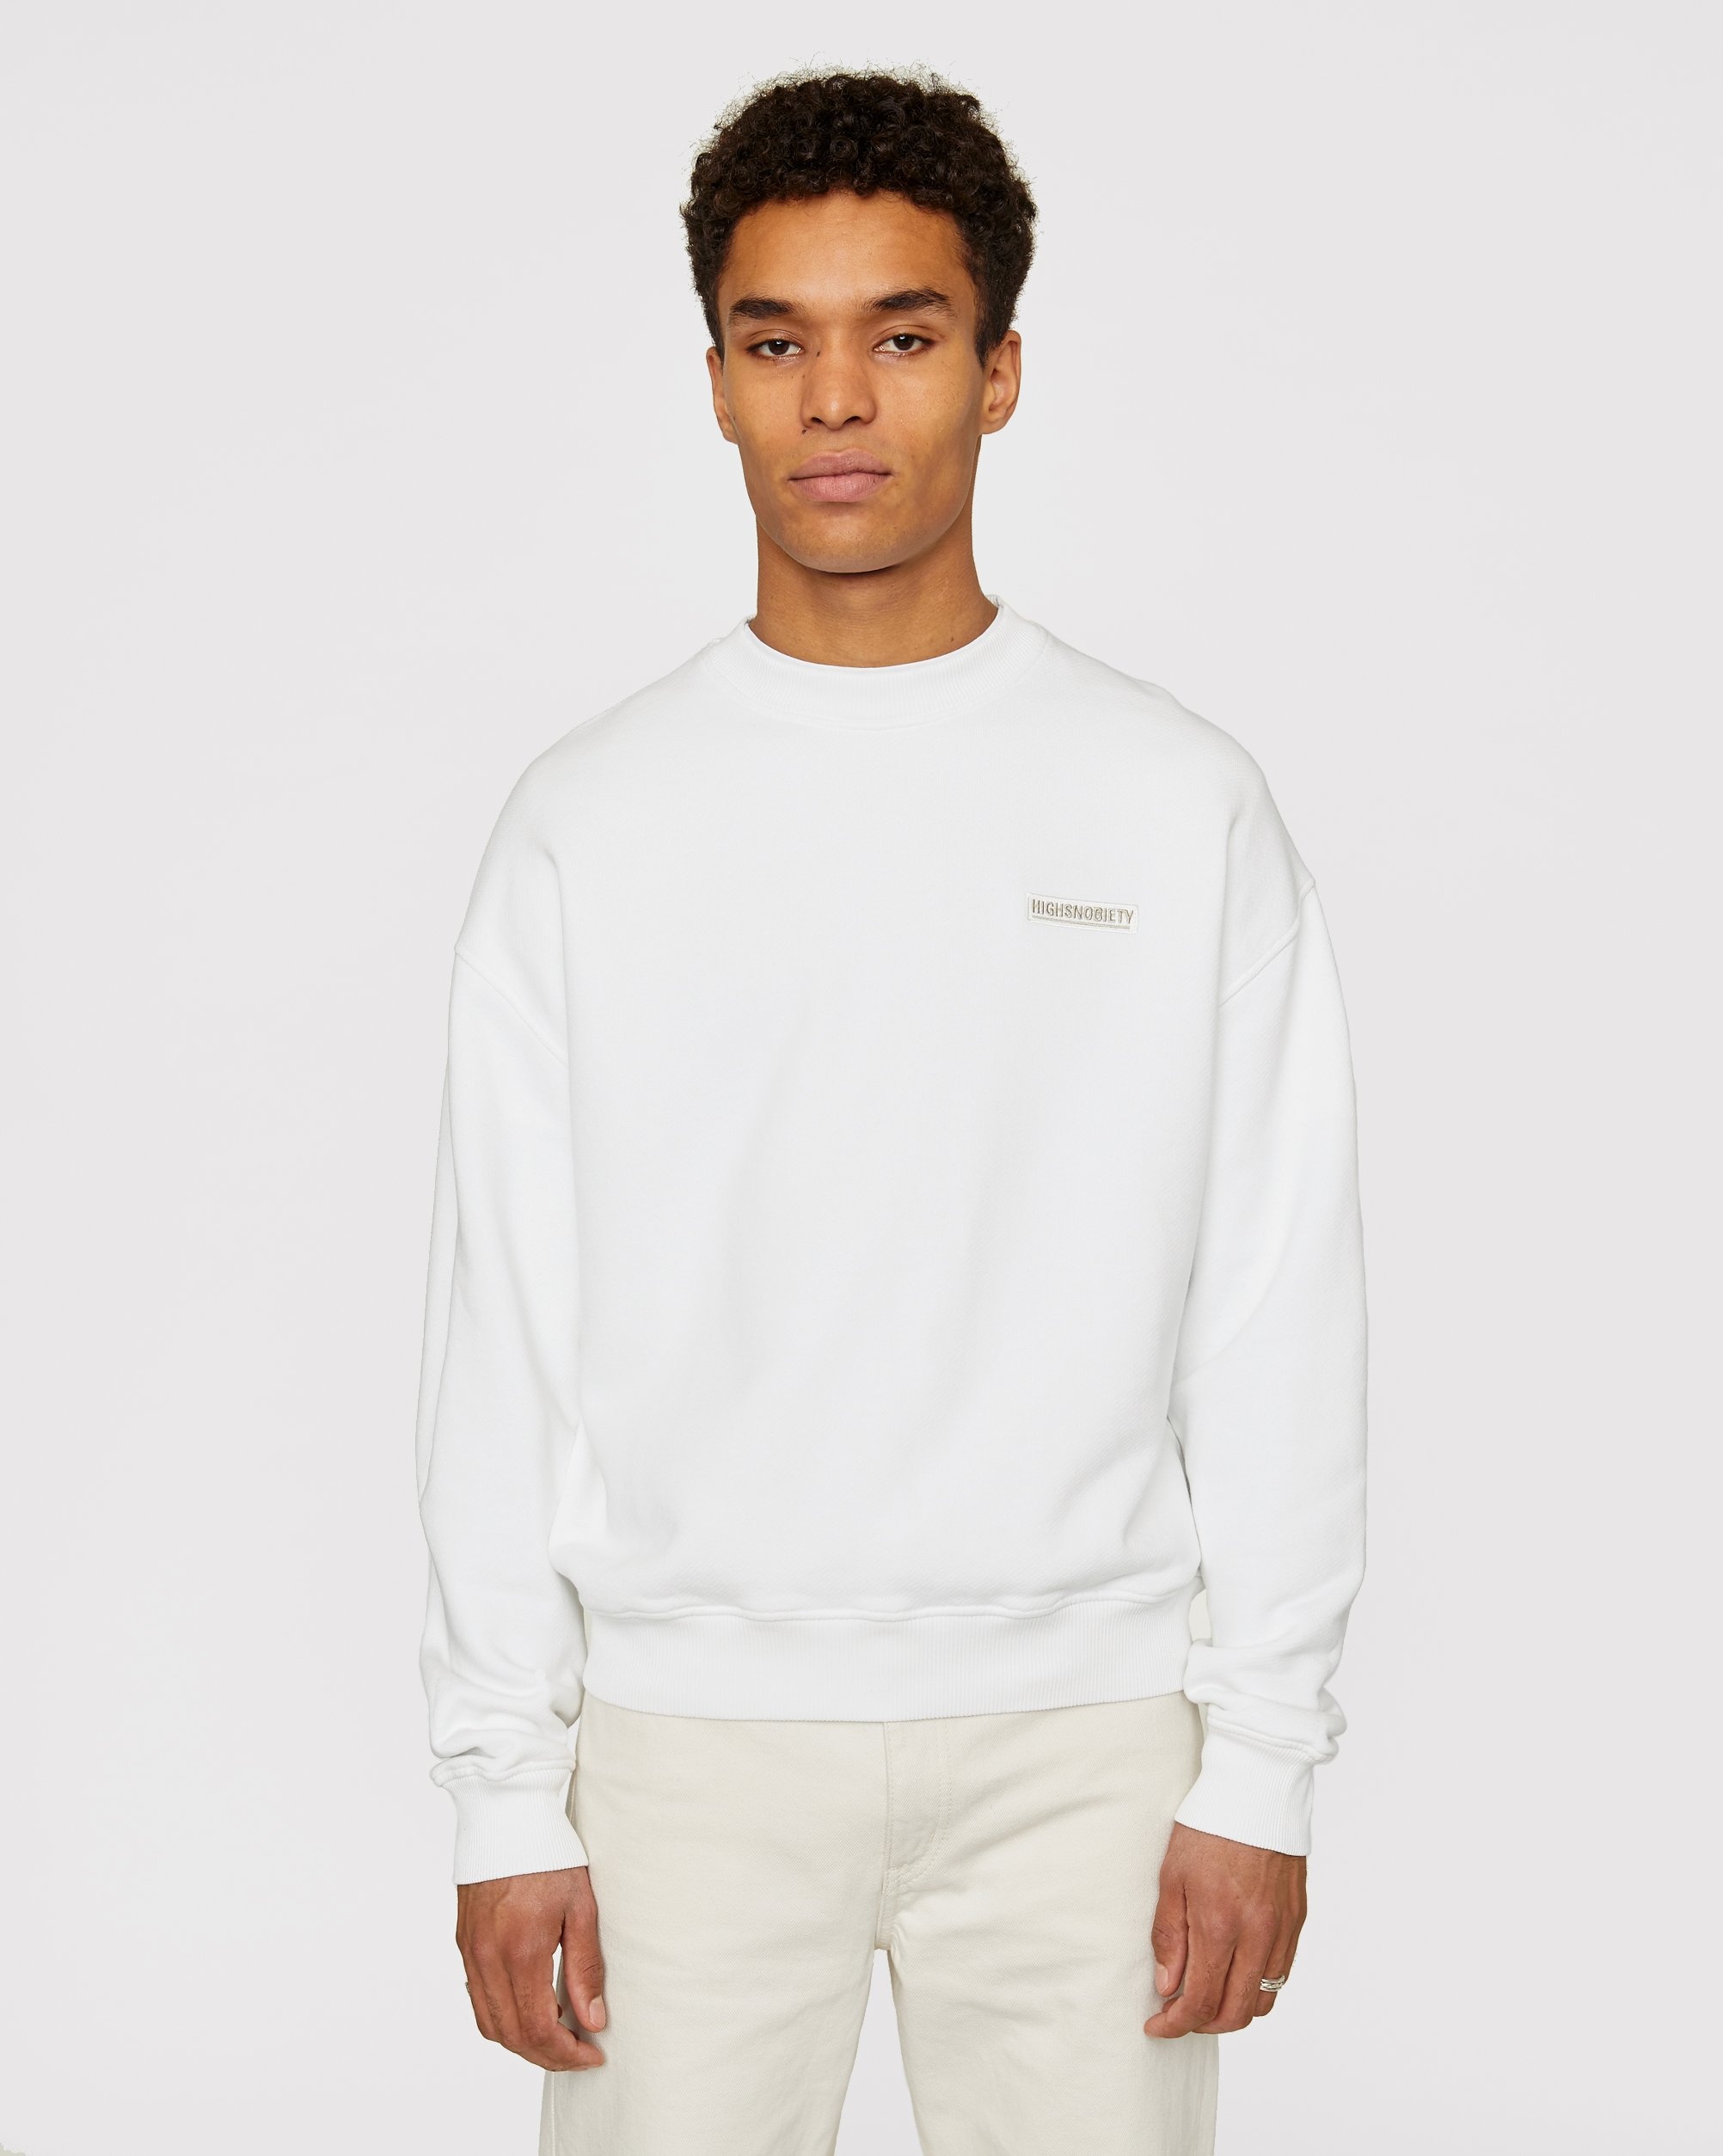 Highsnobiety – Staples Sweatshirt White | Highsnobiety Shop